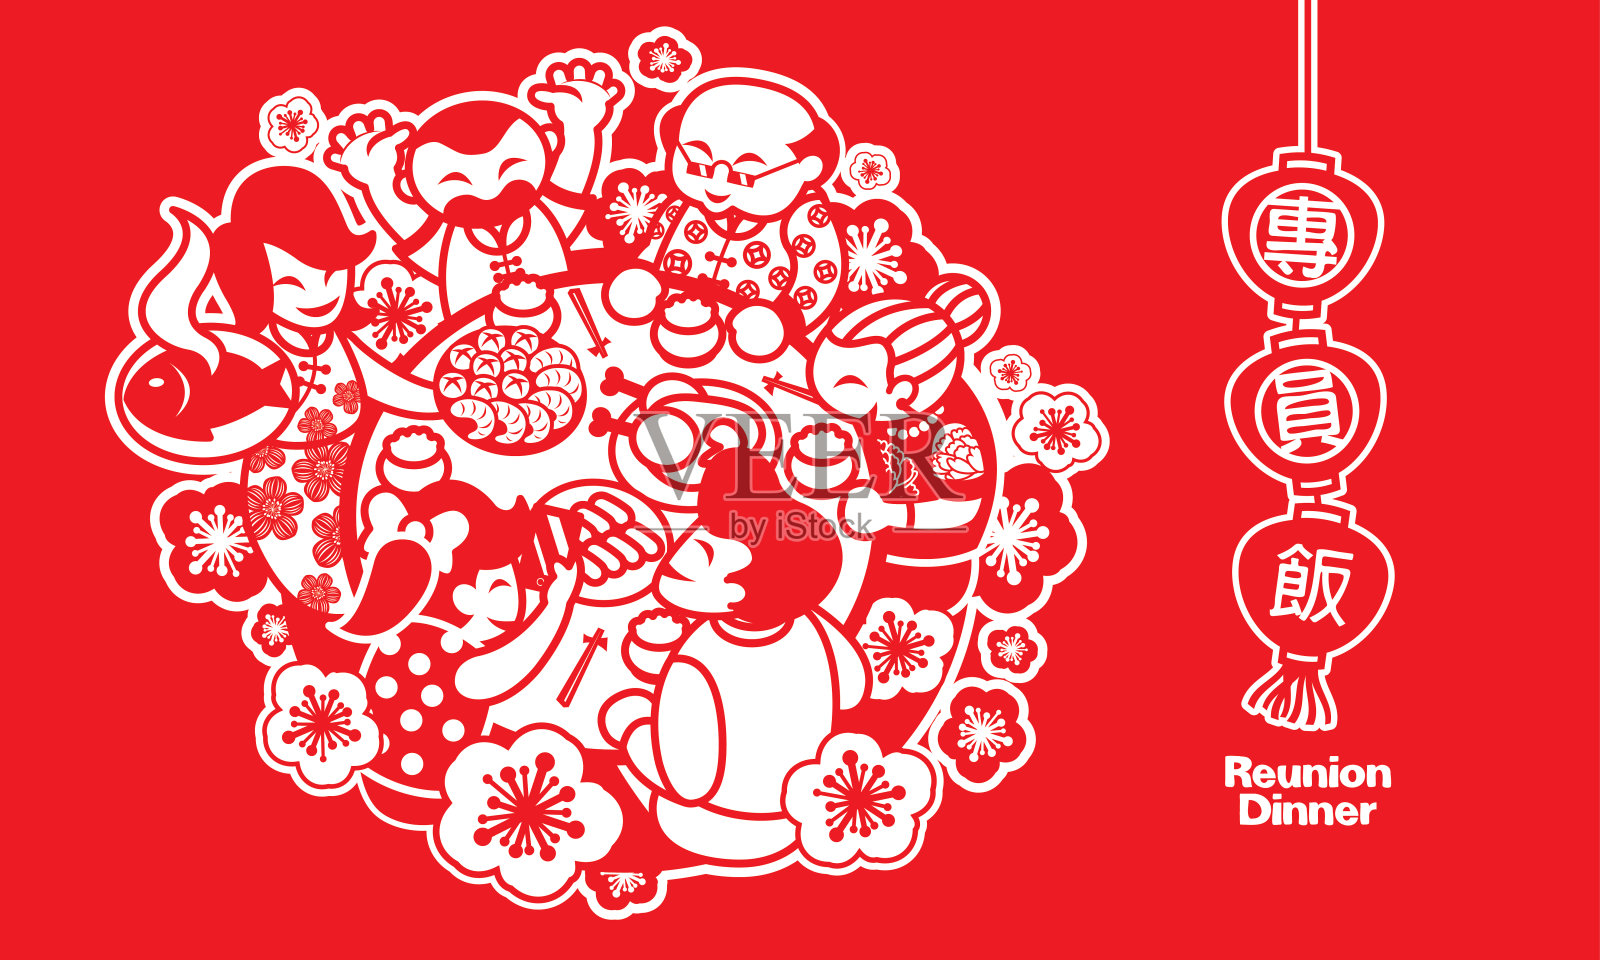 一个亚洲家庭正在享用团圆饭。作品以传统的剪纸风格呈现。插画图片素材